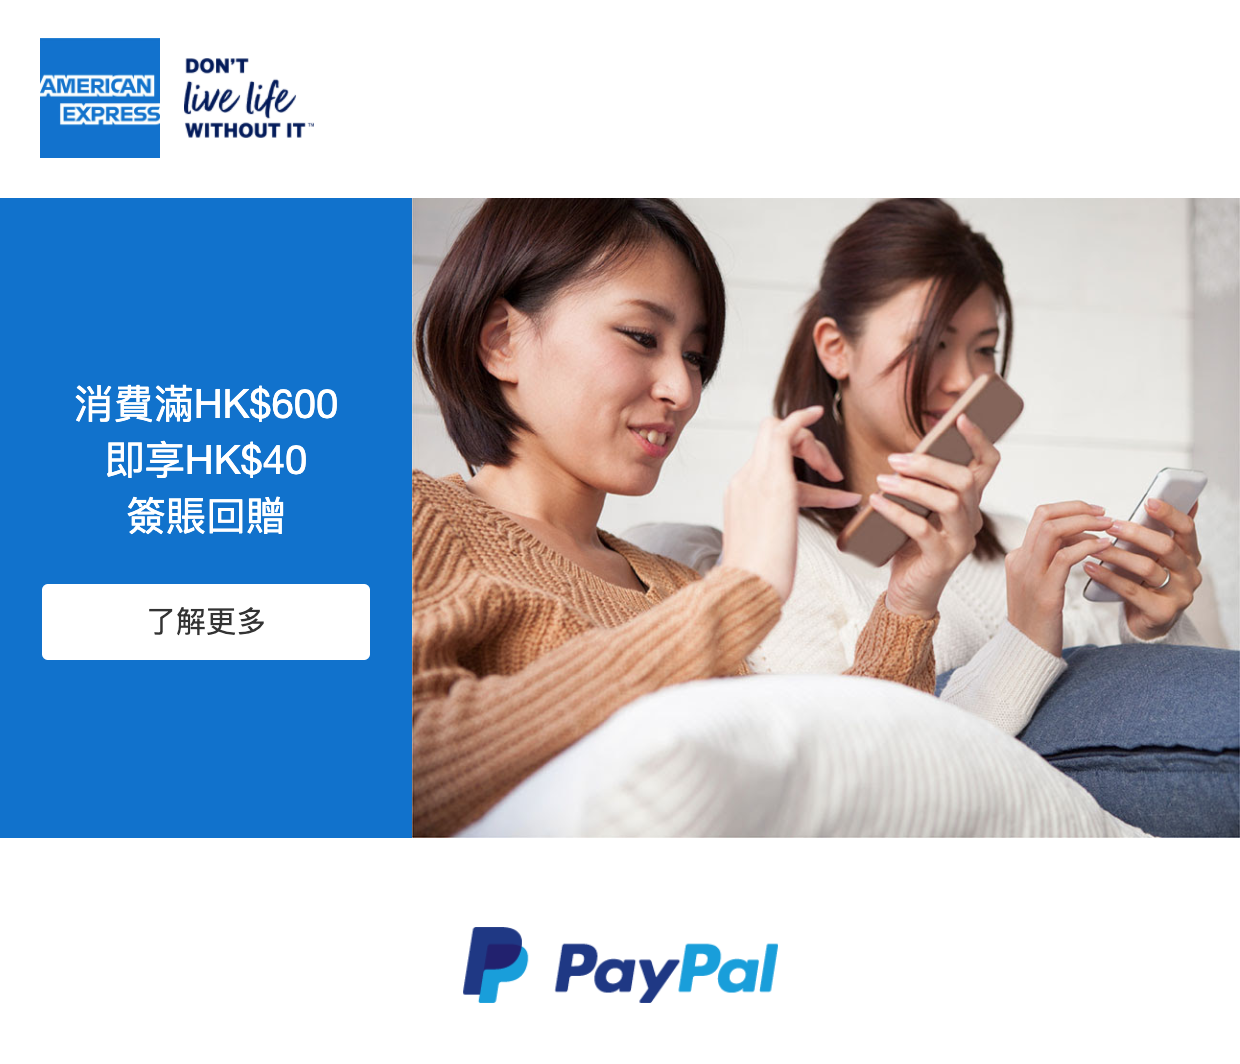 【美國運通卡AE Paypal優惠】經Paypal簽賬累積HK$600，就有HK$40簽賬回贈！每卡可享3次！